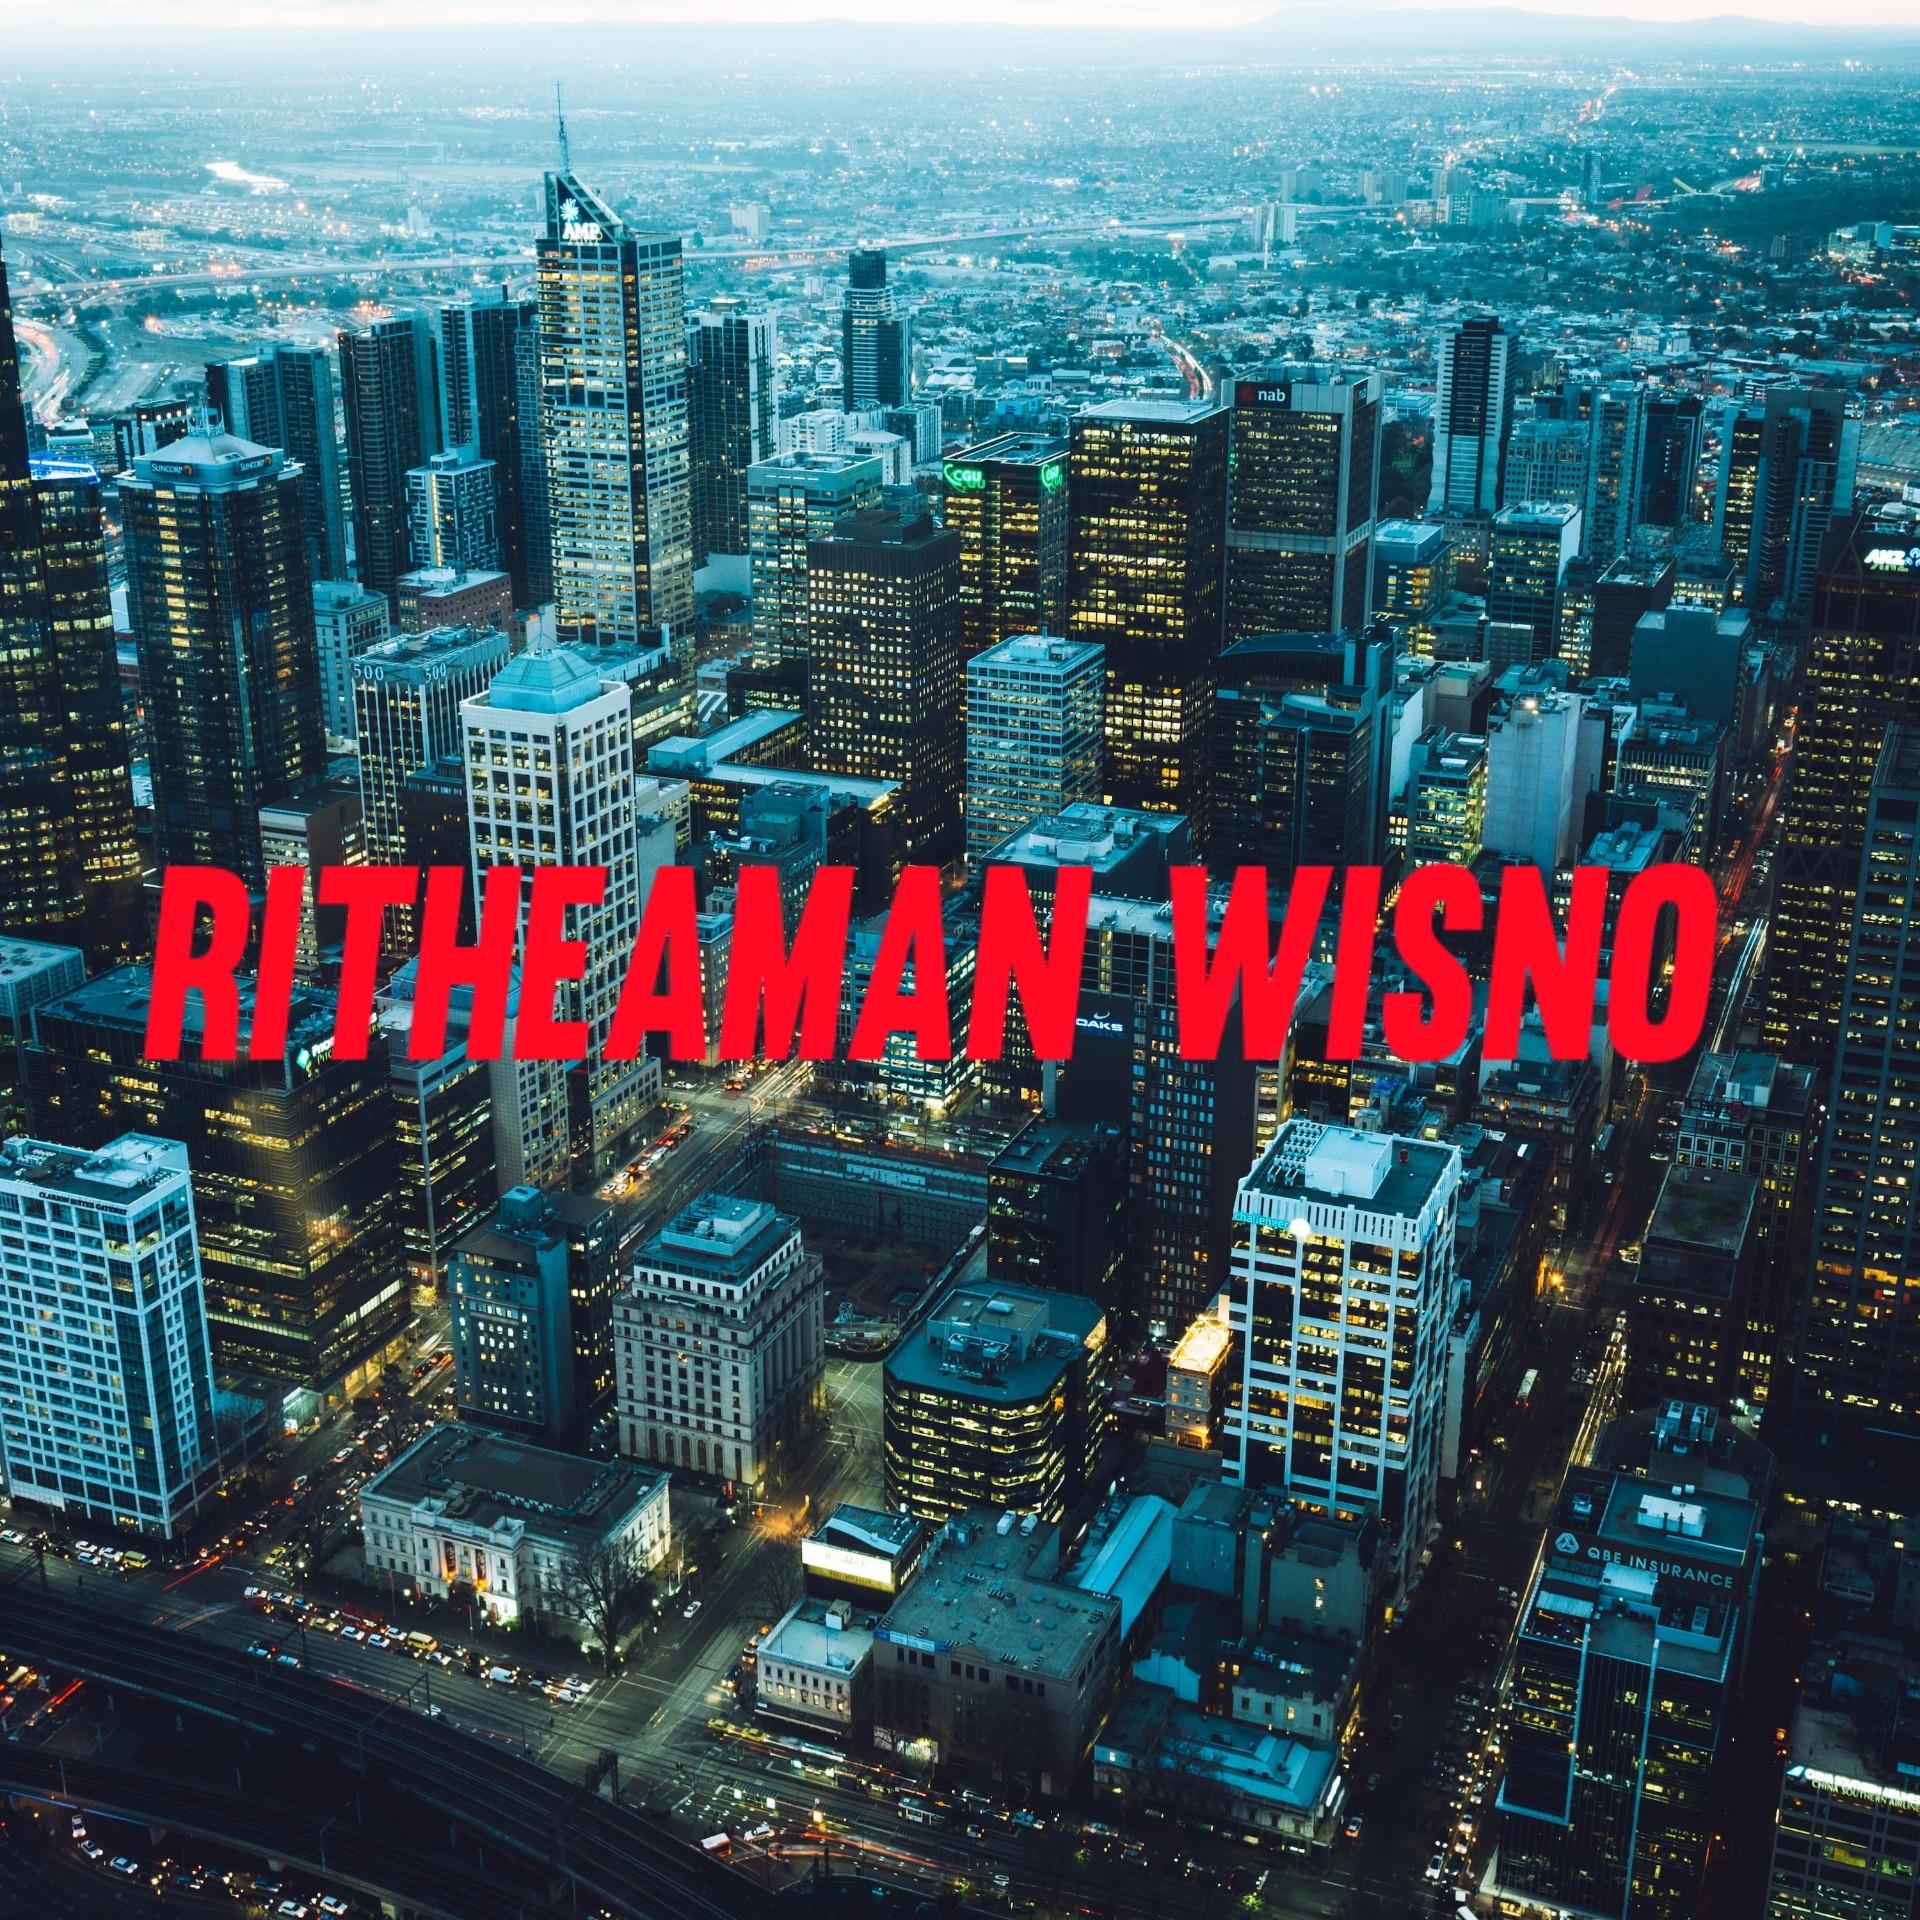 Ritheaman Wisno - The Last Destiny